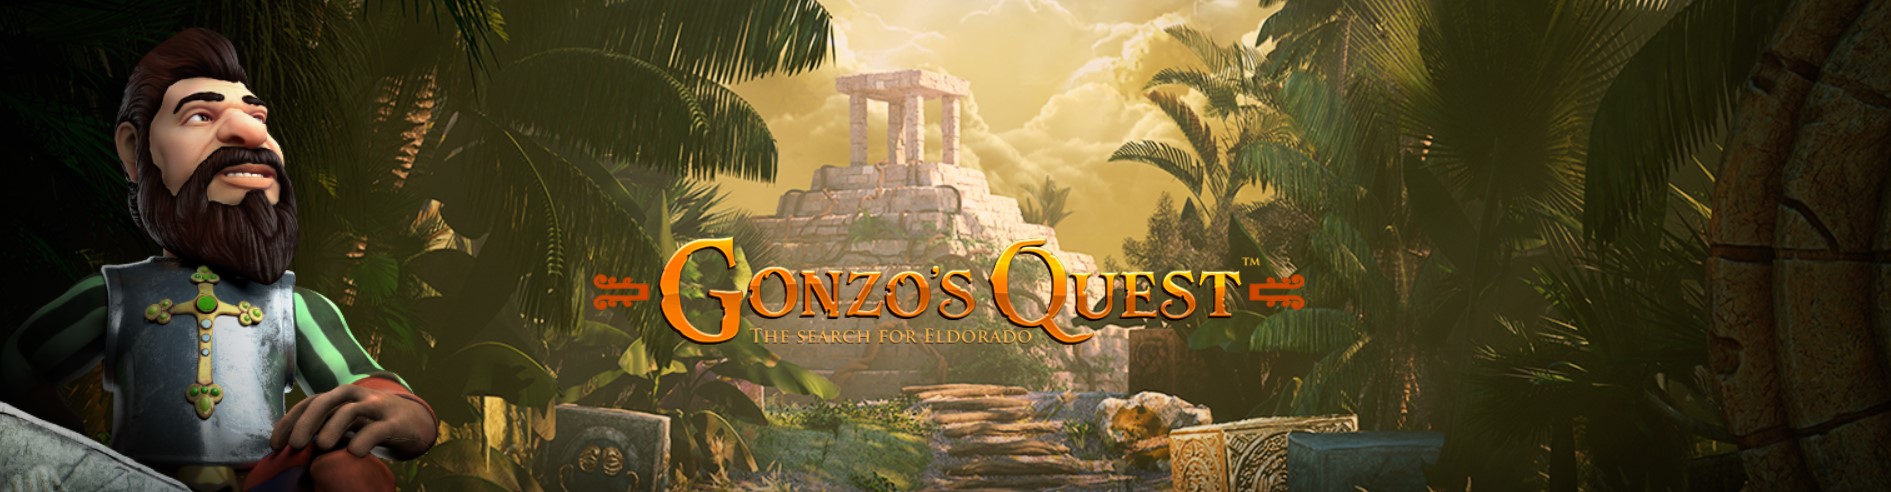 gonzos quest från netent